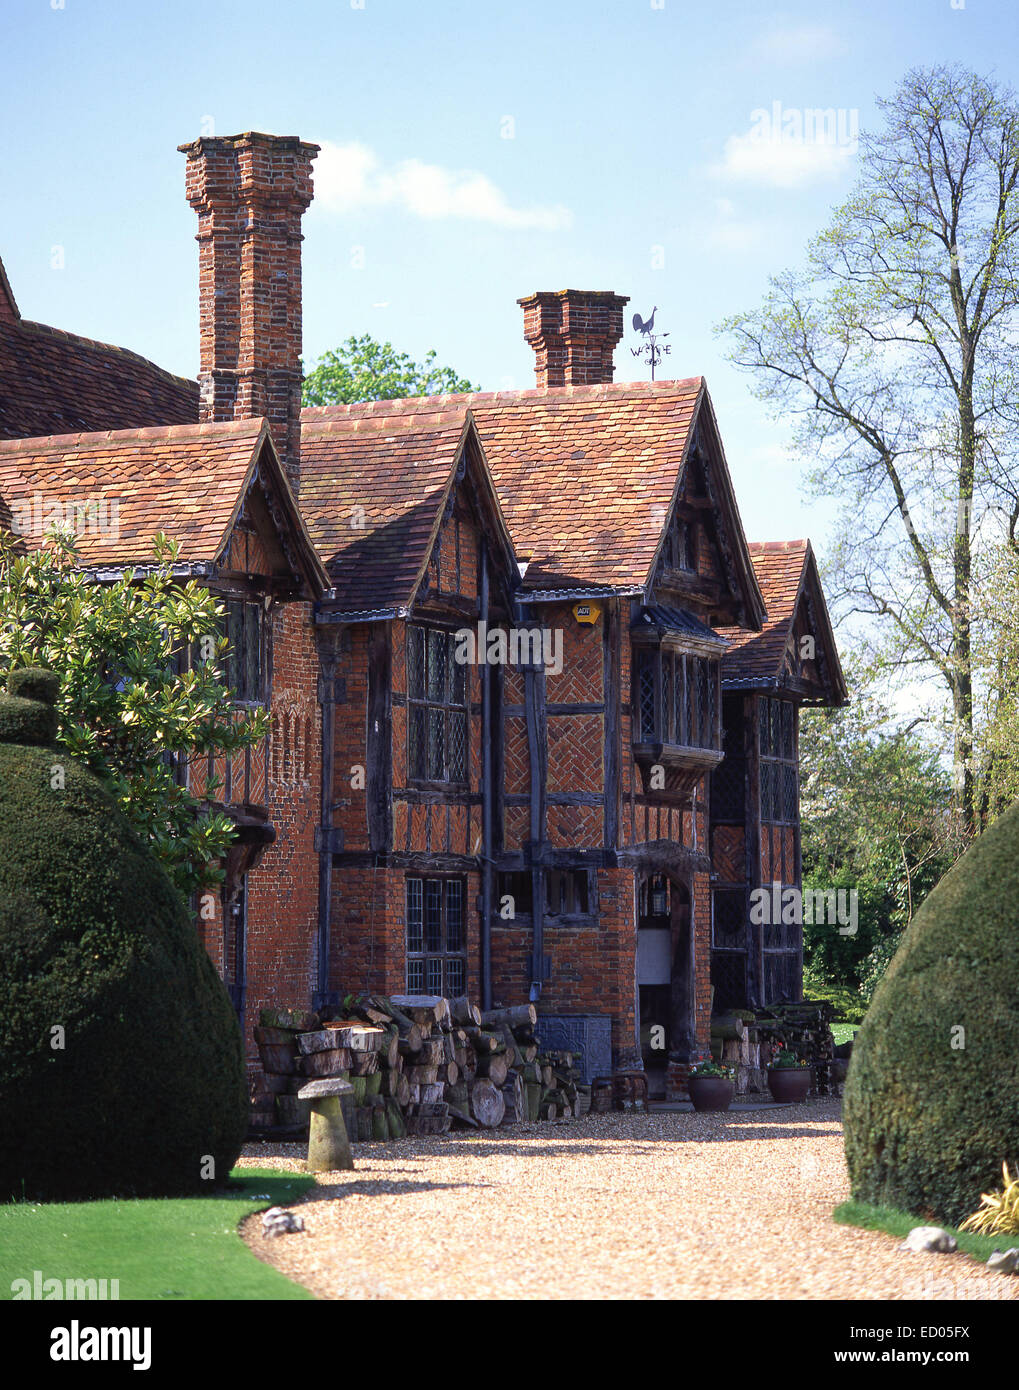 Manoir Tudor Cour Dorney, Dorney, Buckinghamshire, Angleterre, Royaume-Uni Banque D'Images